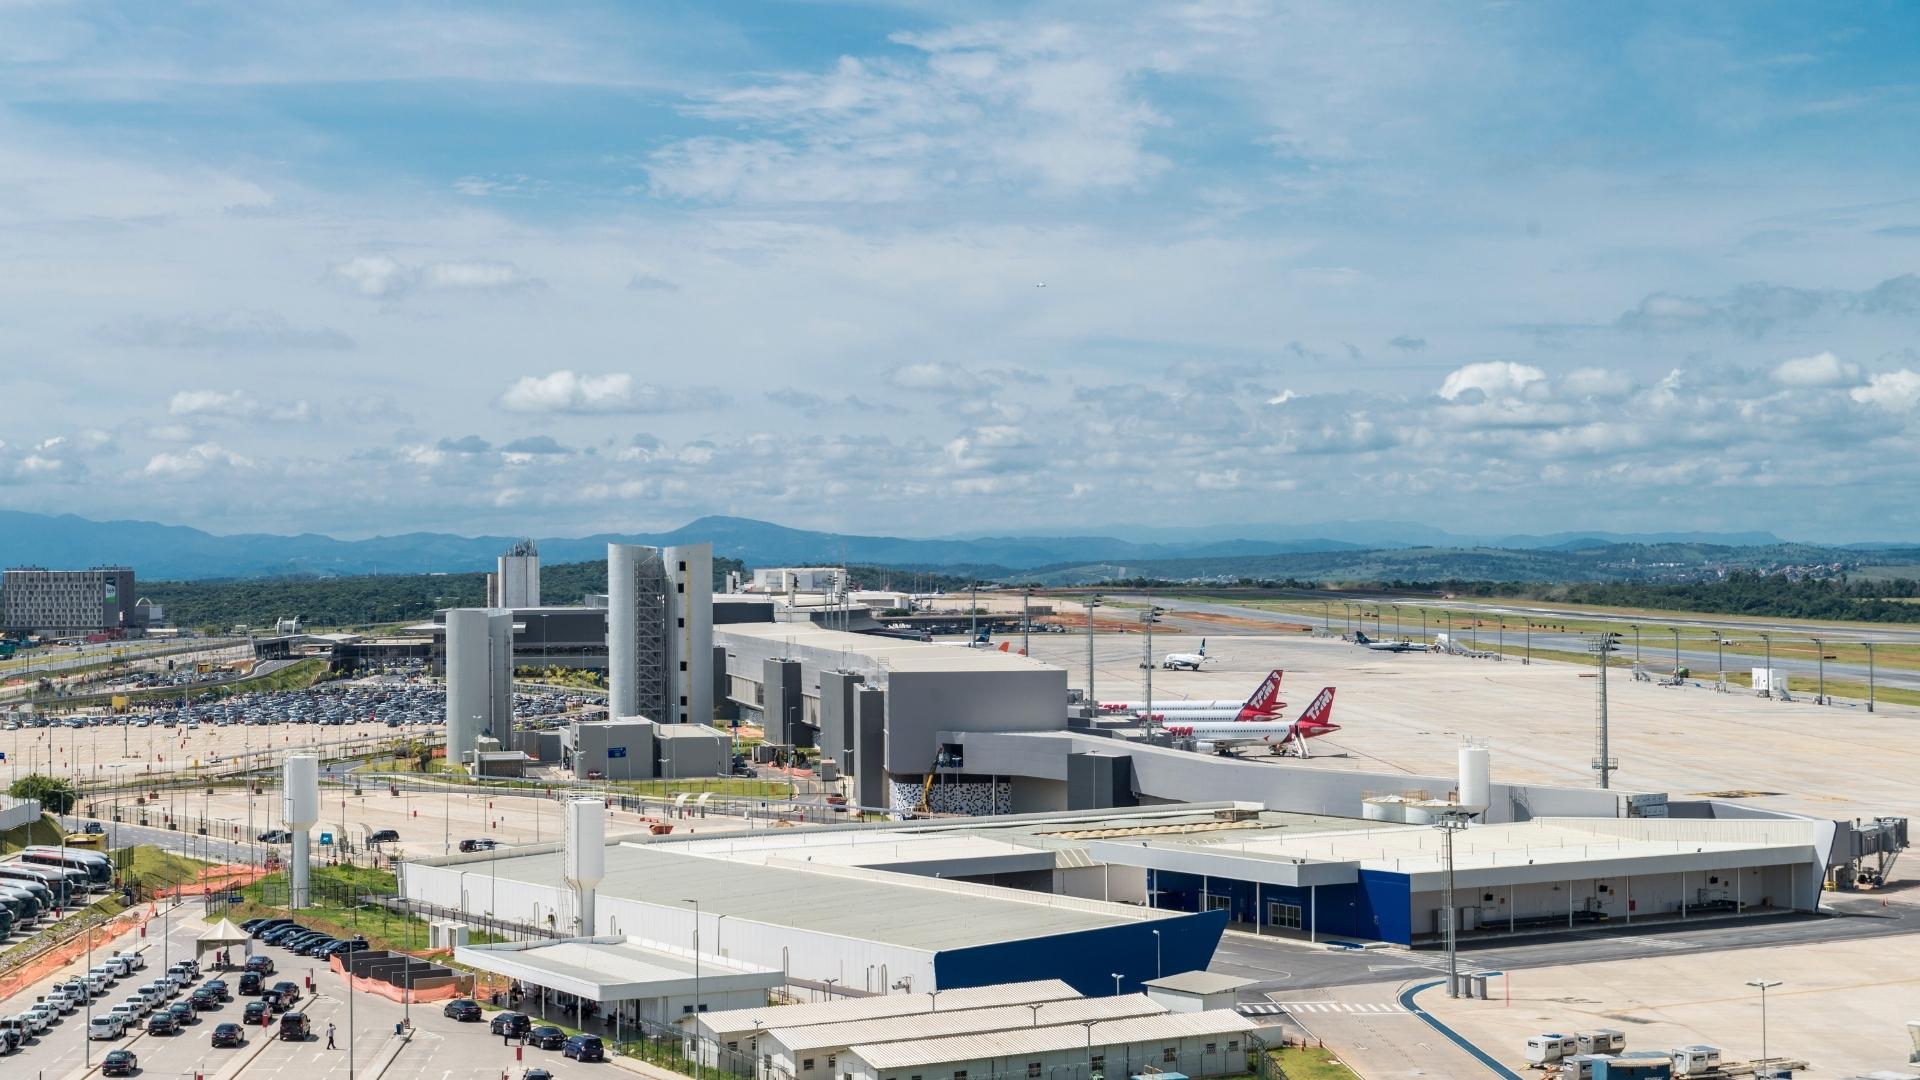 Clientes 123milhas terão descontos exclusivos no estacionamento do Aeroporto Internacional de Belo Horizonte